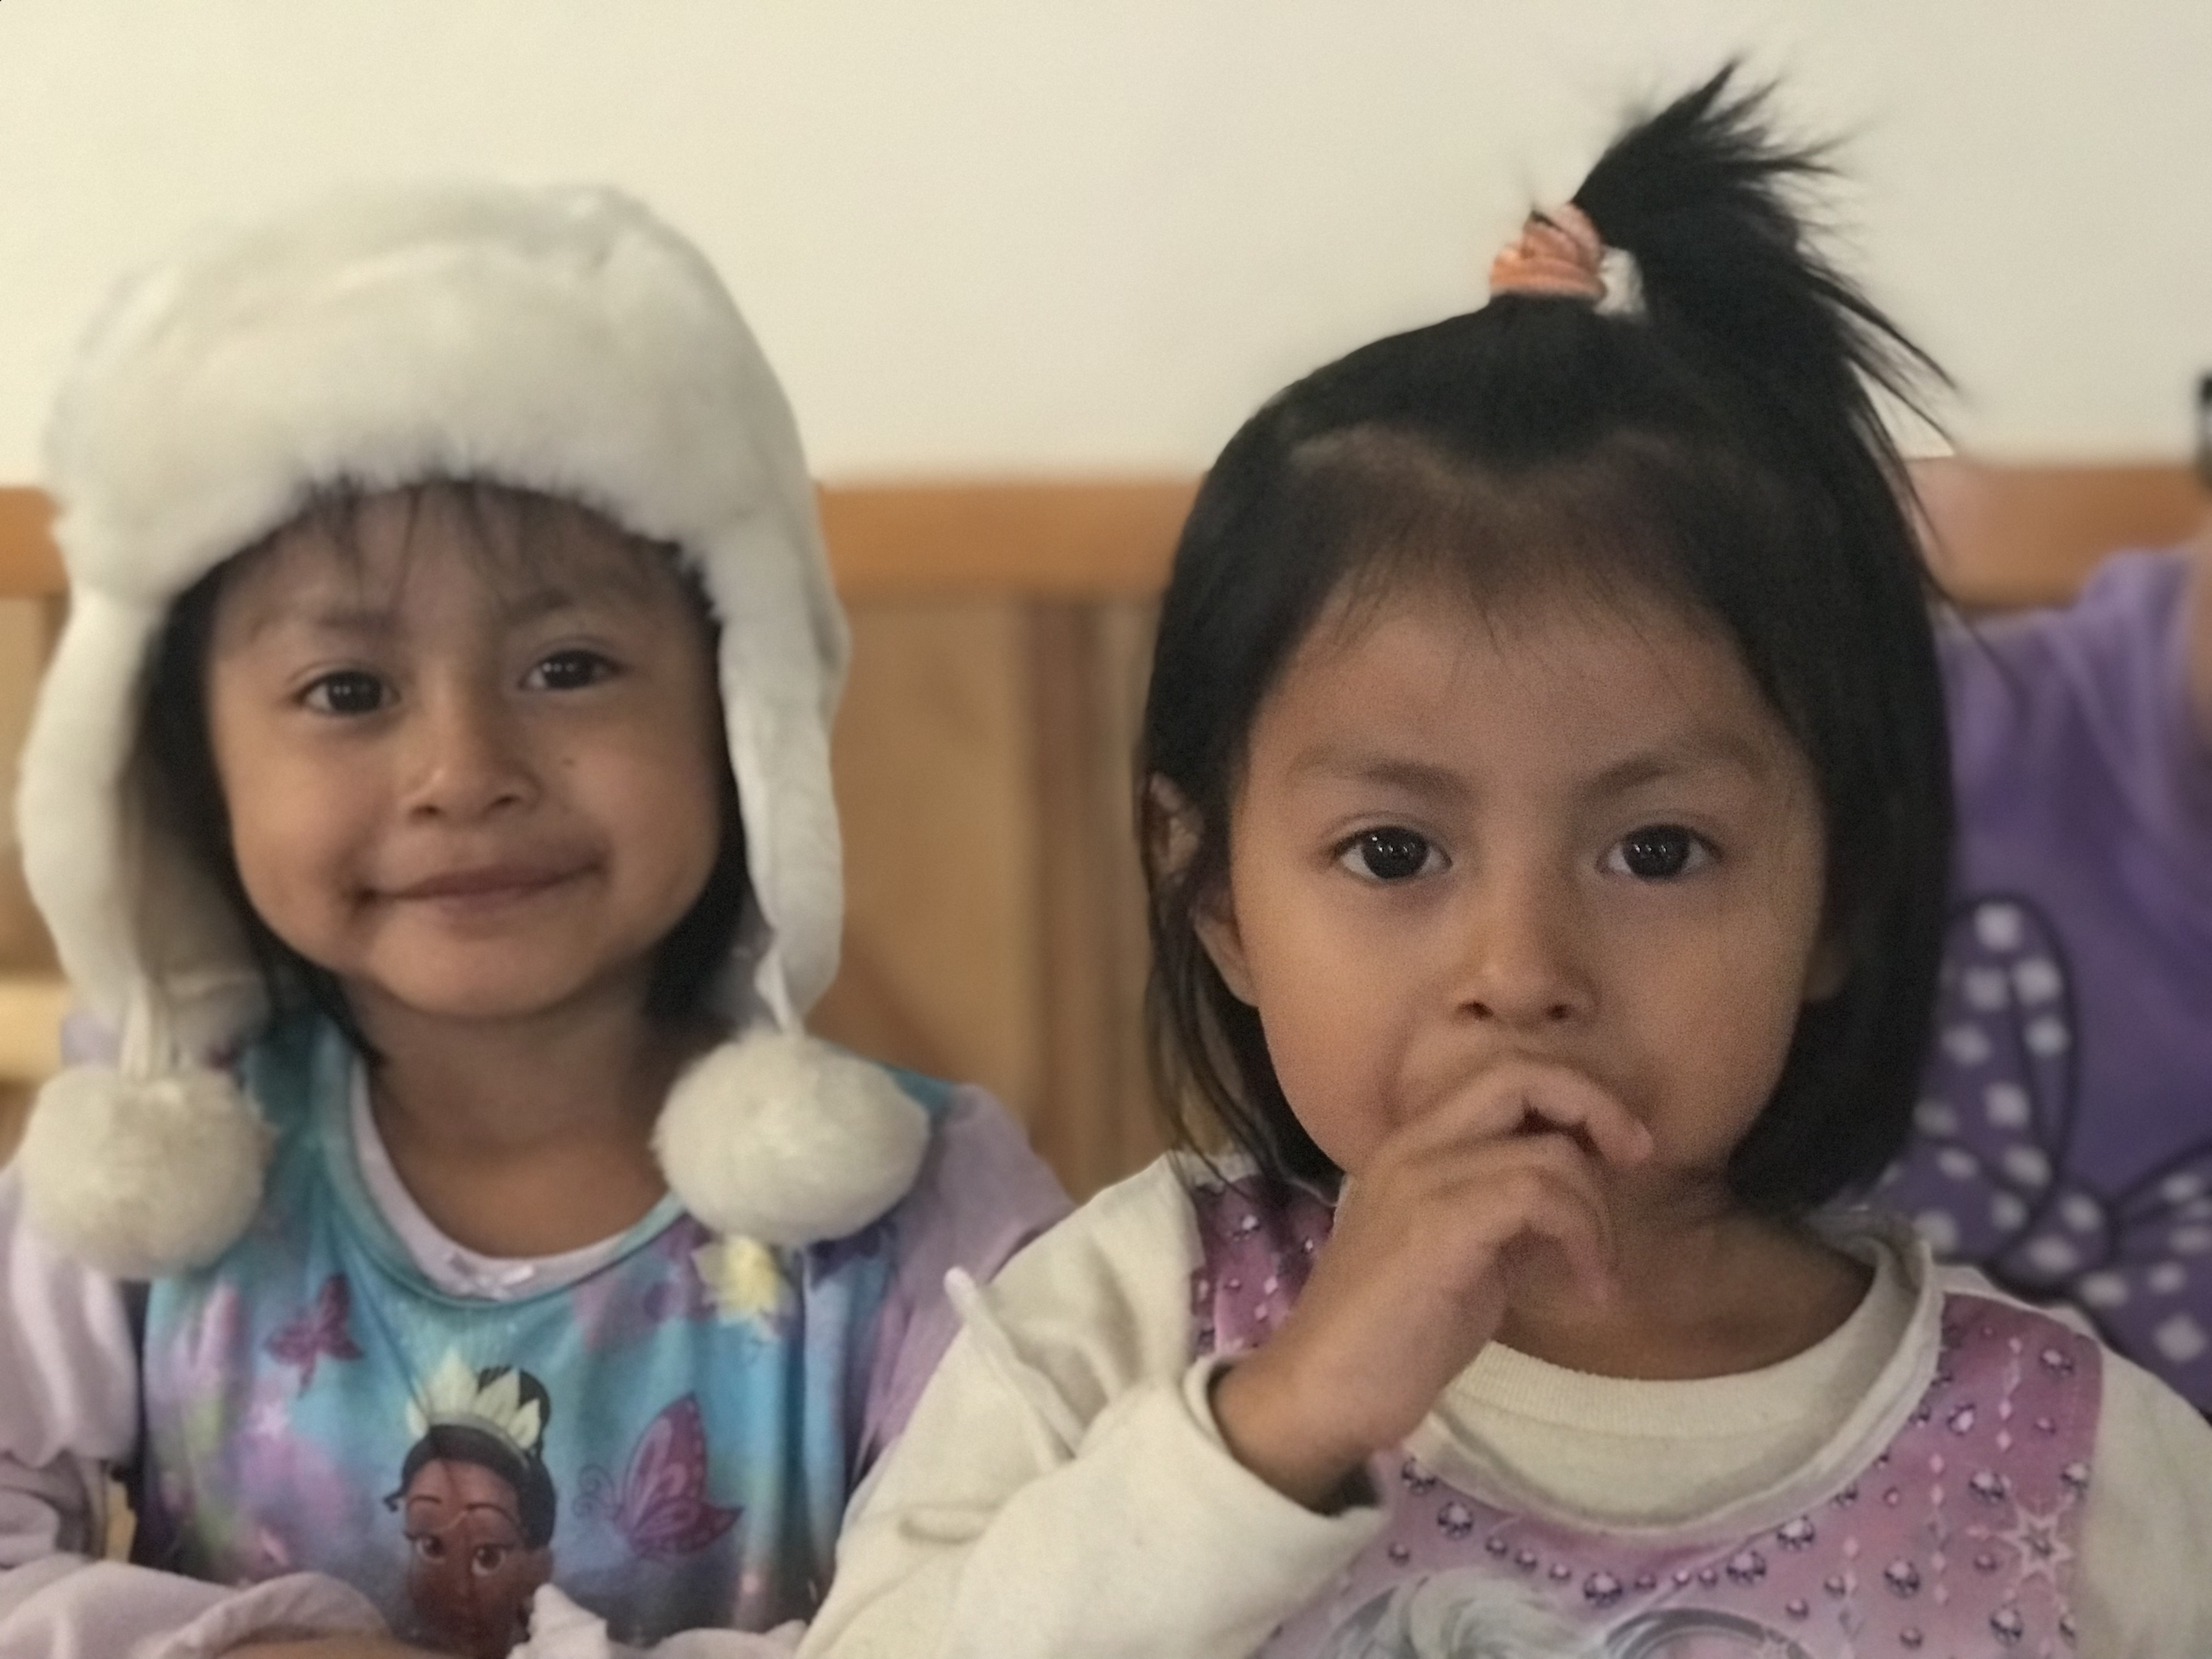 Twins from Guatemala